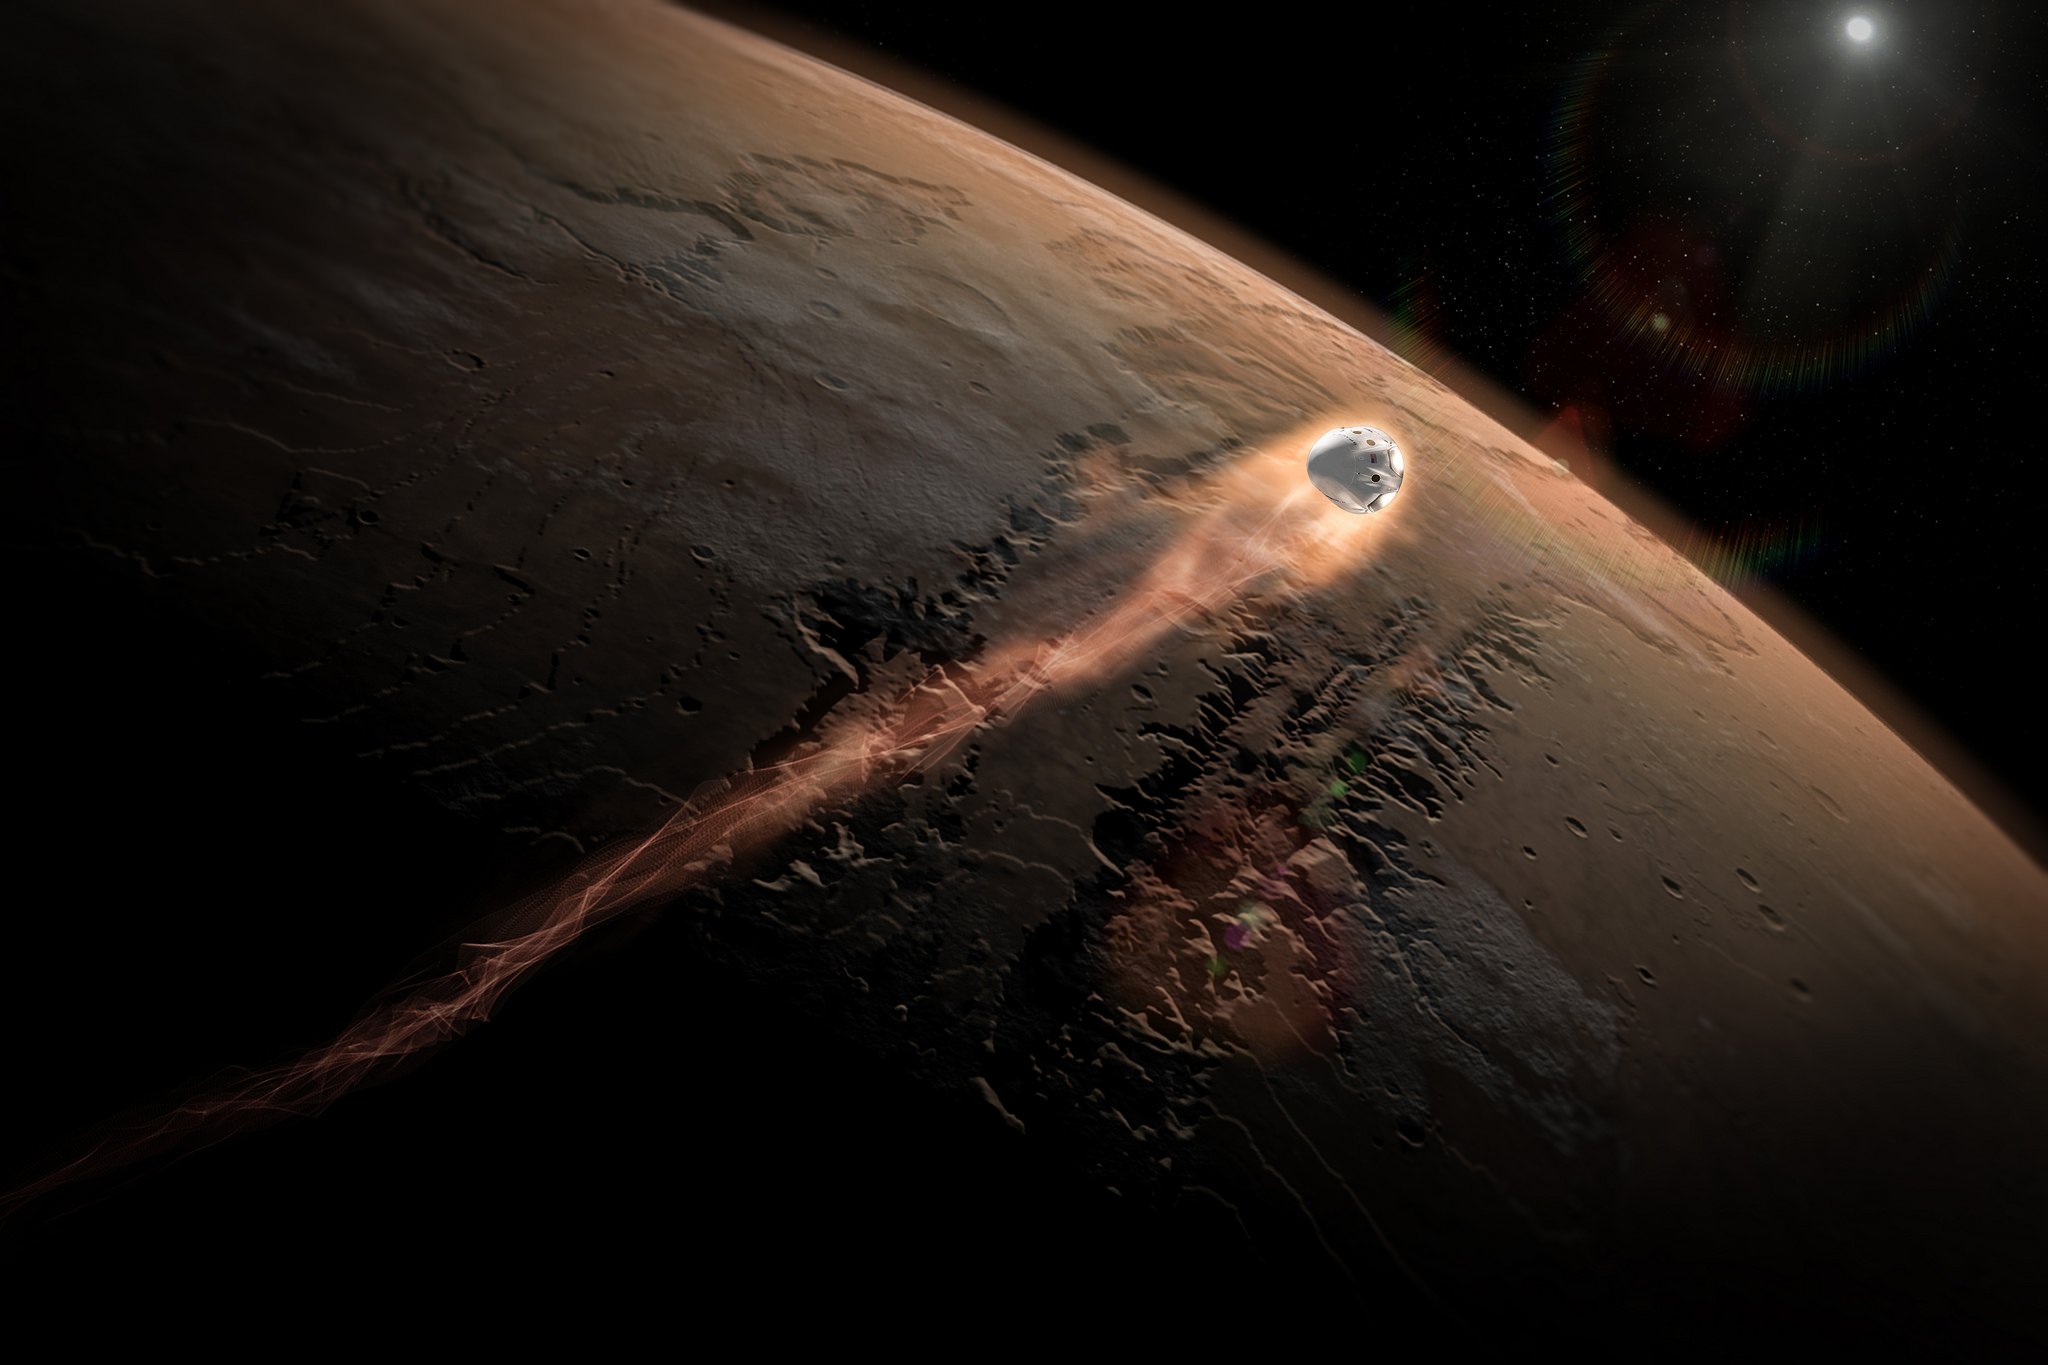 Dragon-Kapsel vor der Landung auf dem Mars: Die erste bemannte Mission zum Mars plant Elon Musk für 2025, mehr als fünf Jahre vor der Nasa.